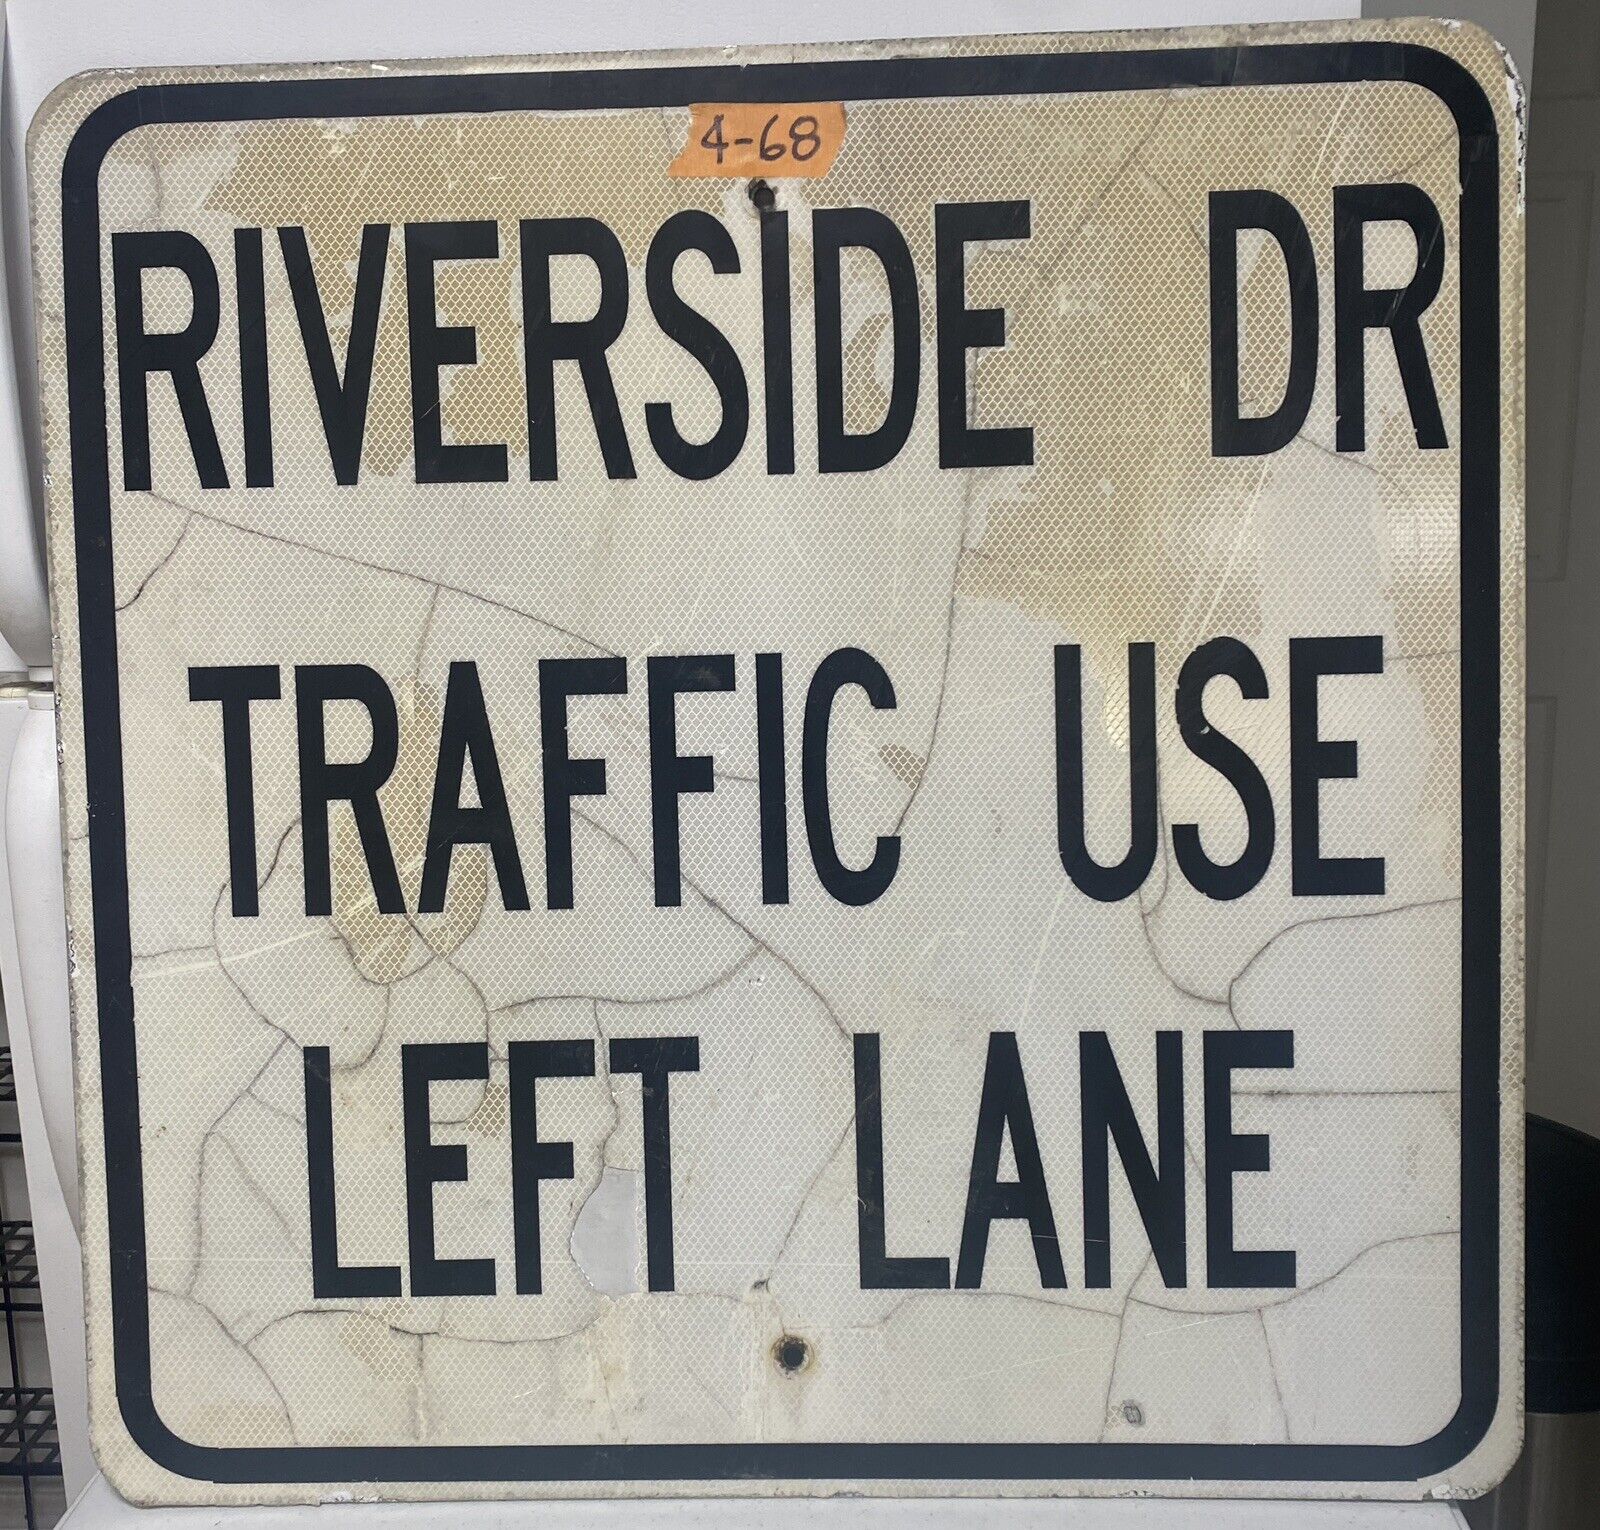 Street Traffic Road Sign Riverside Dr Danville 30\